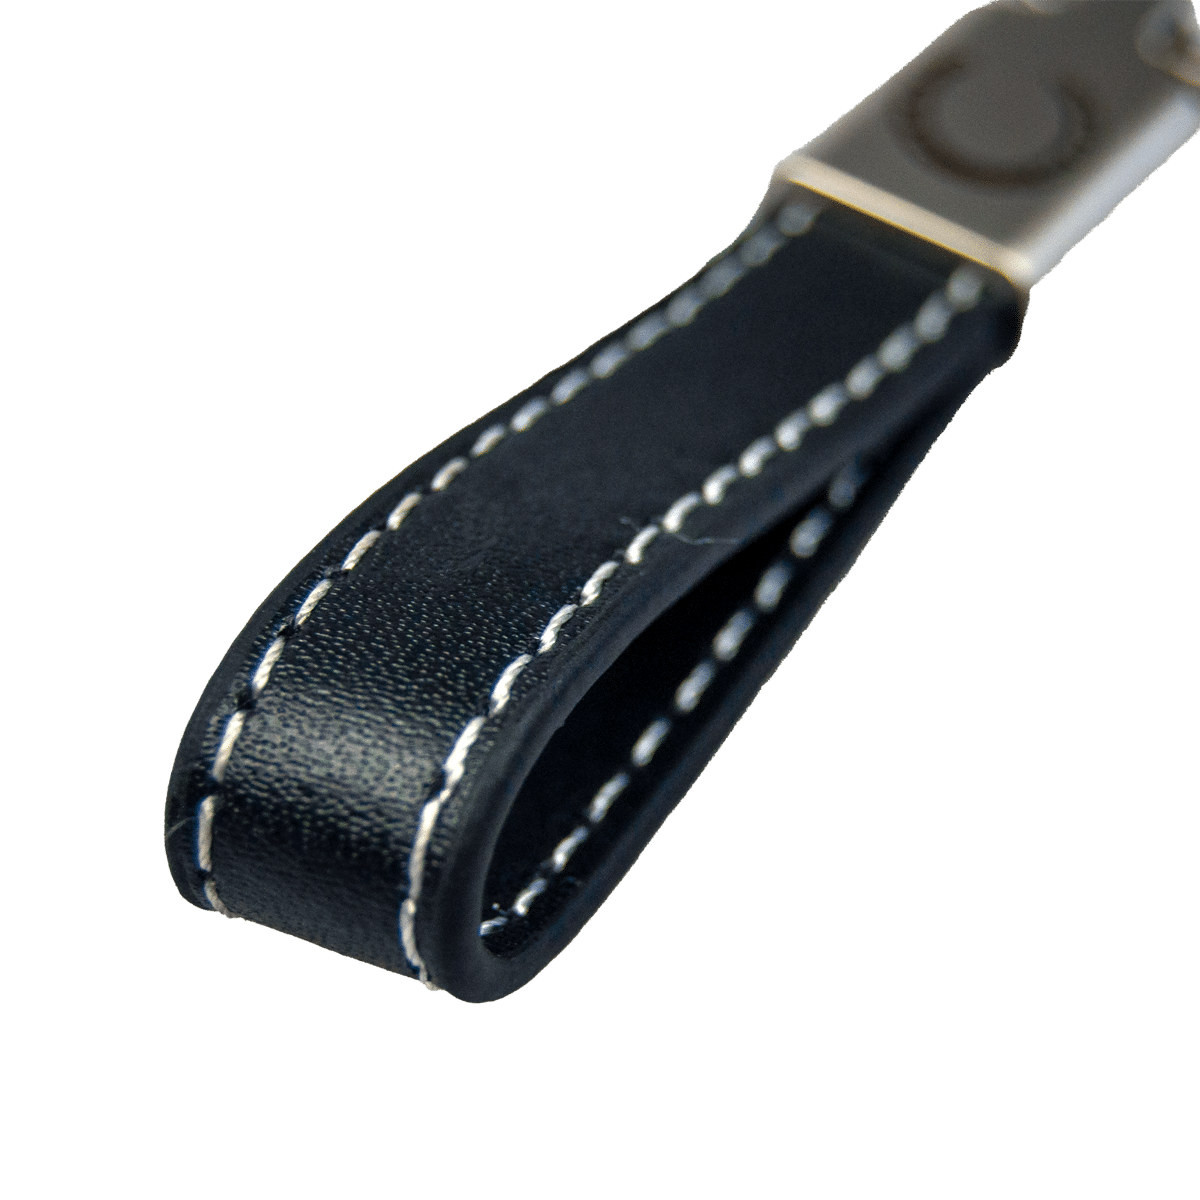 Elegant nyckelring med läderband- passar hästägaren